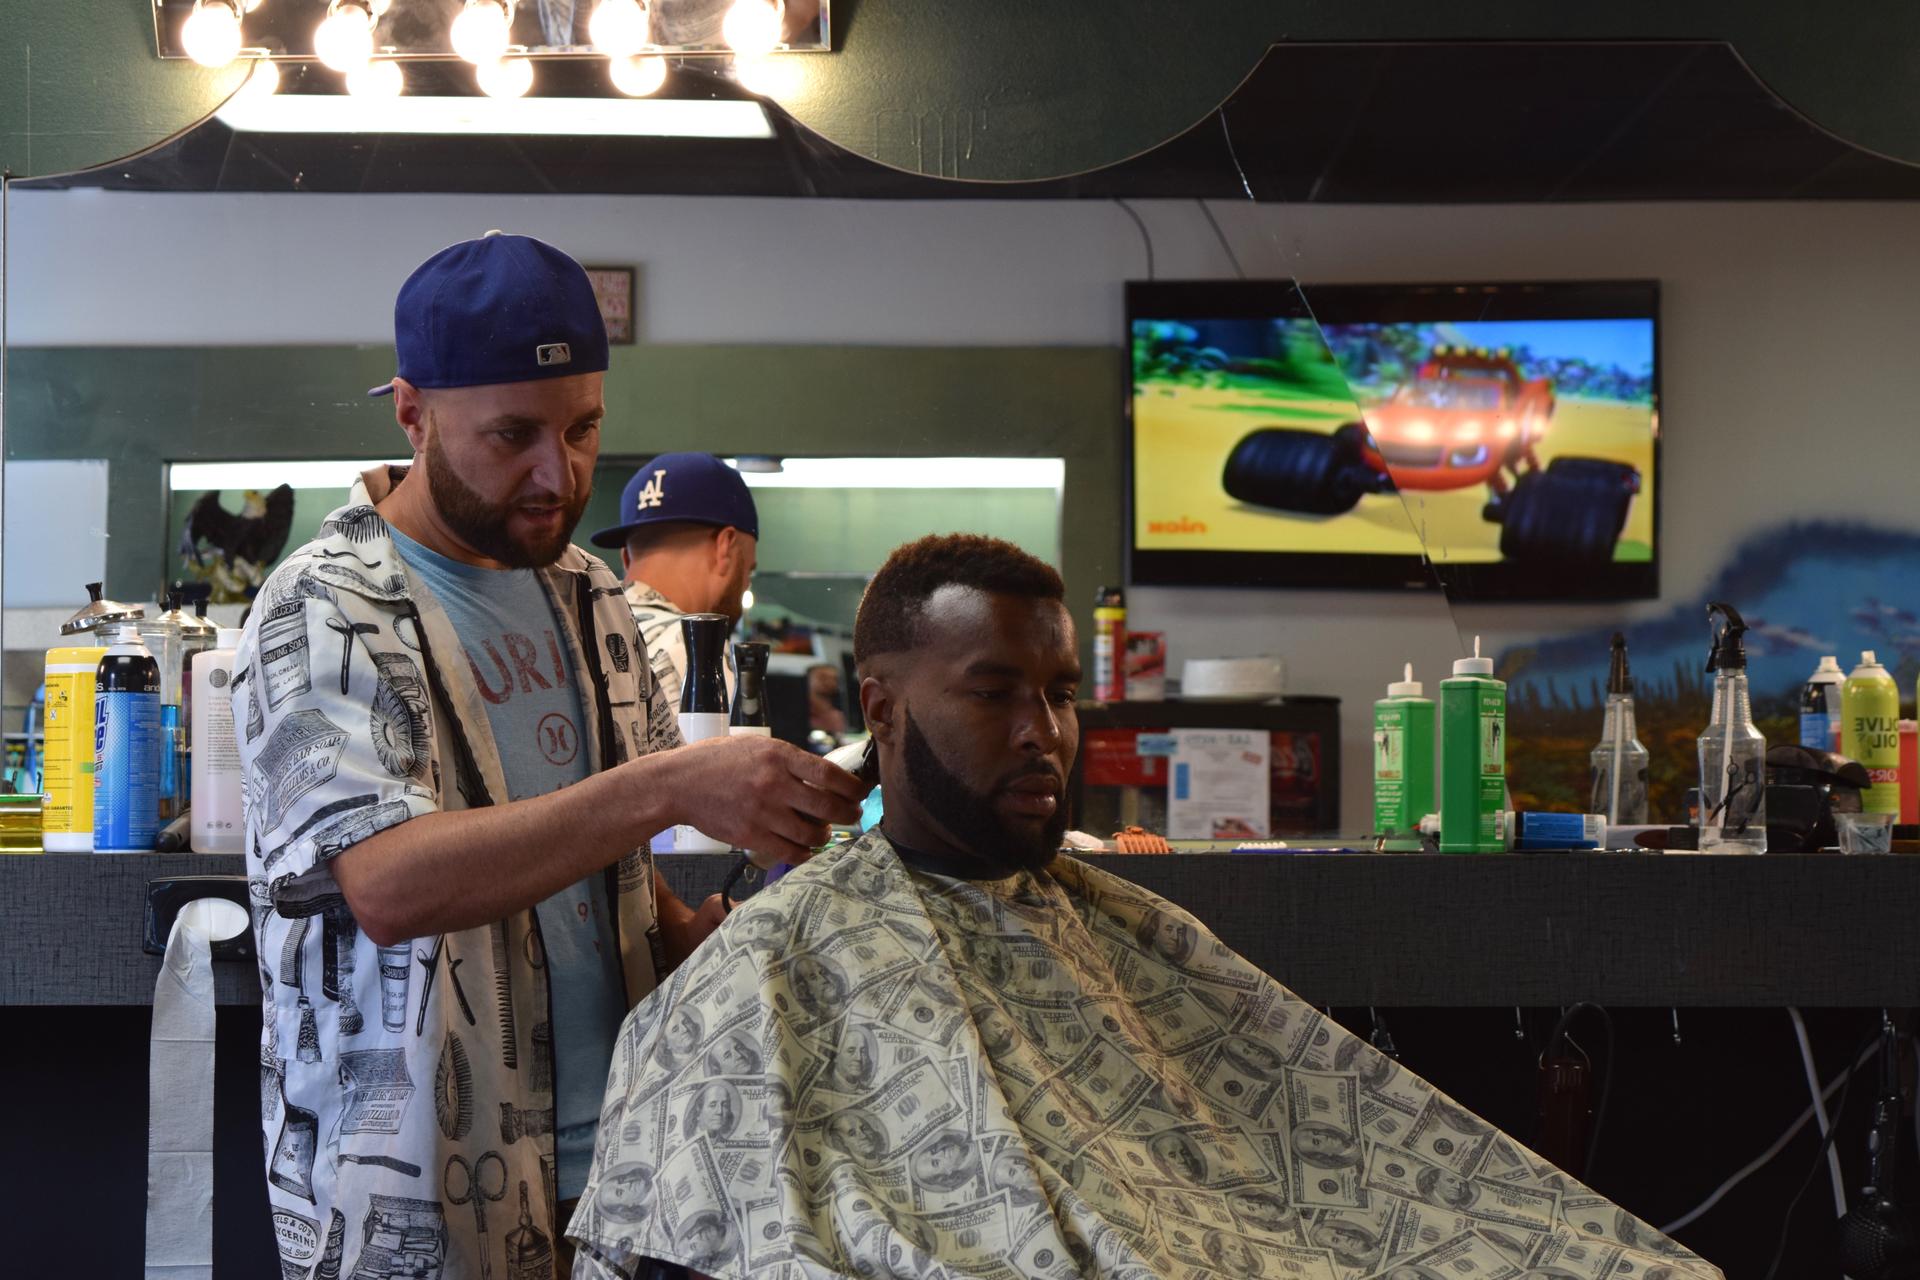 Hassan at his barbershop in Lincoln, Nebraska